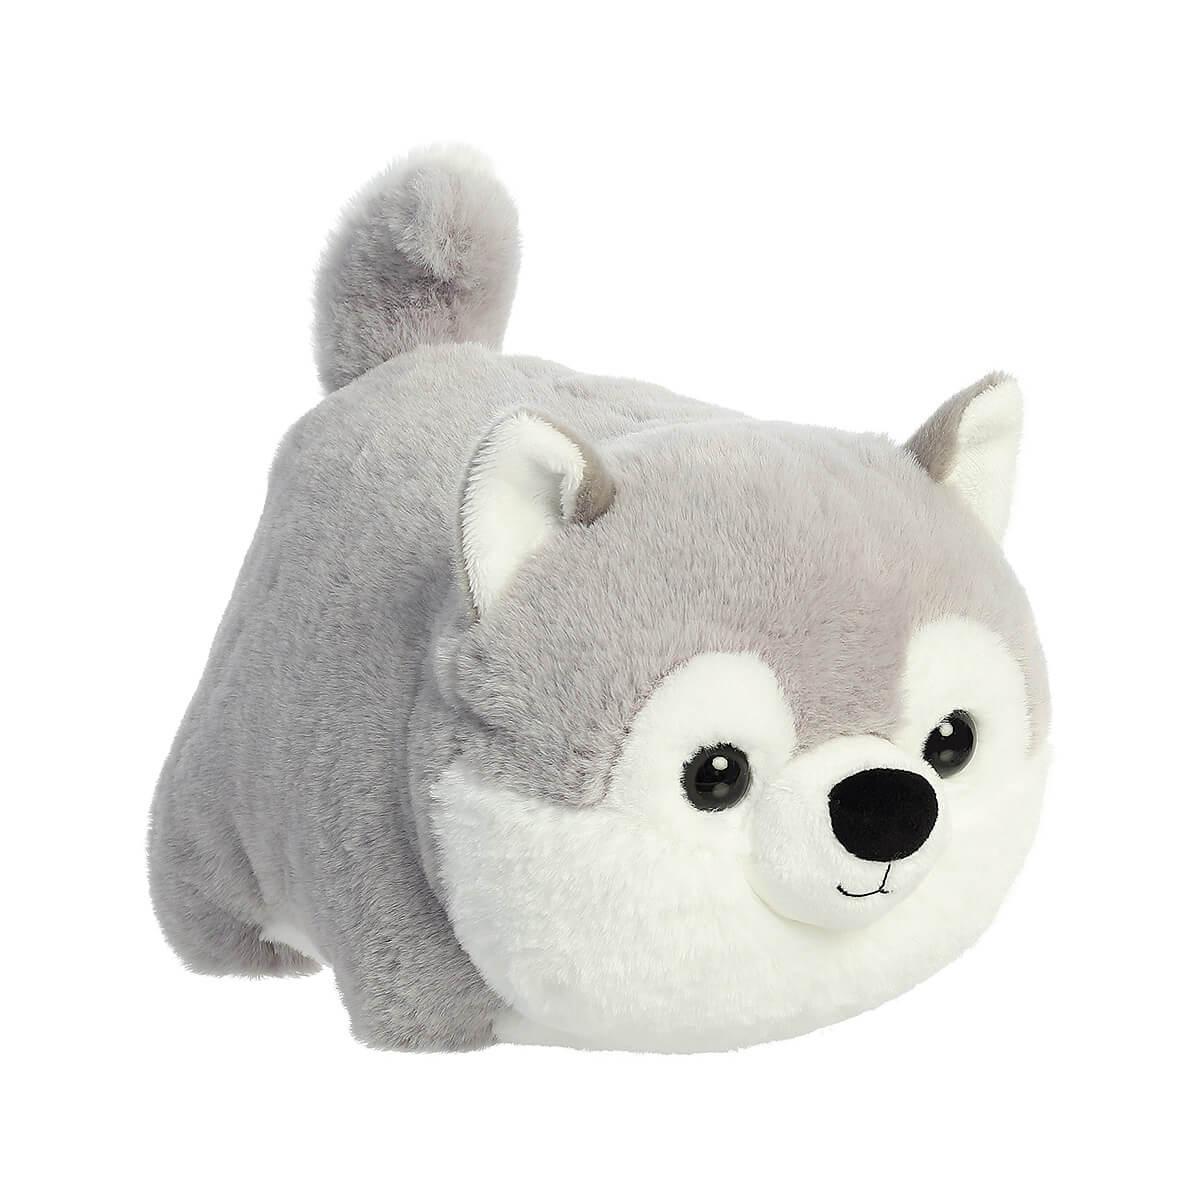  Spudster Haze Gray Husky Plush Toy - 10 Inch